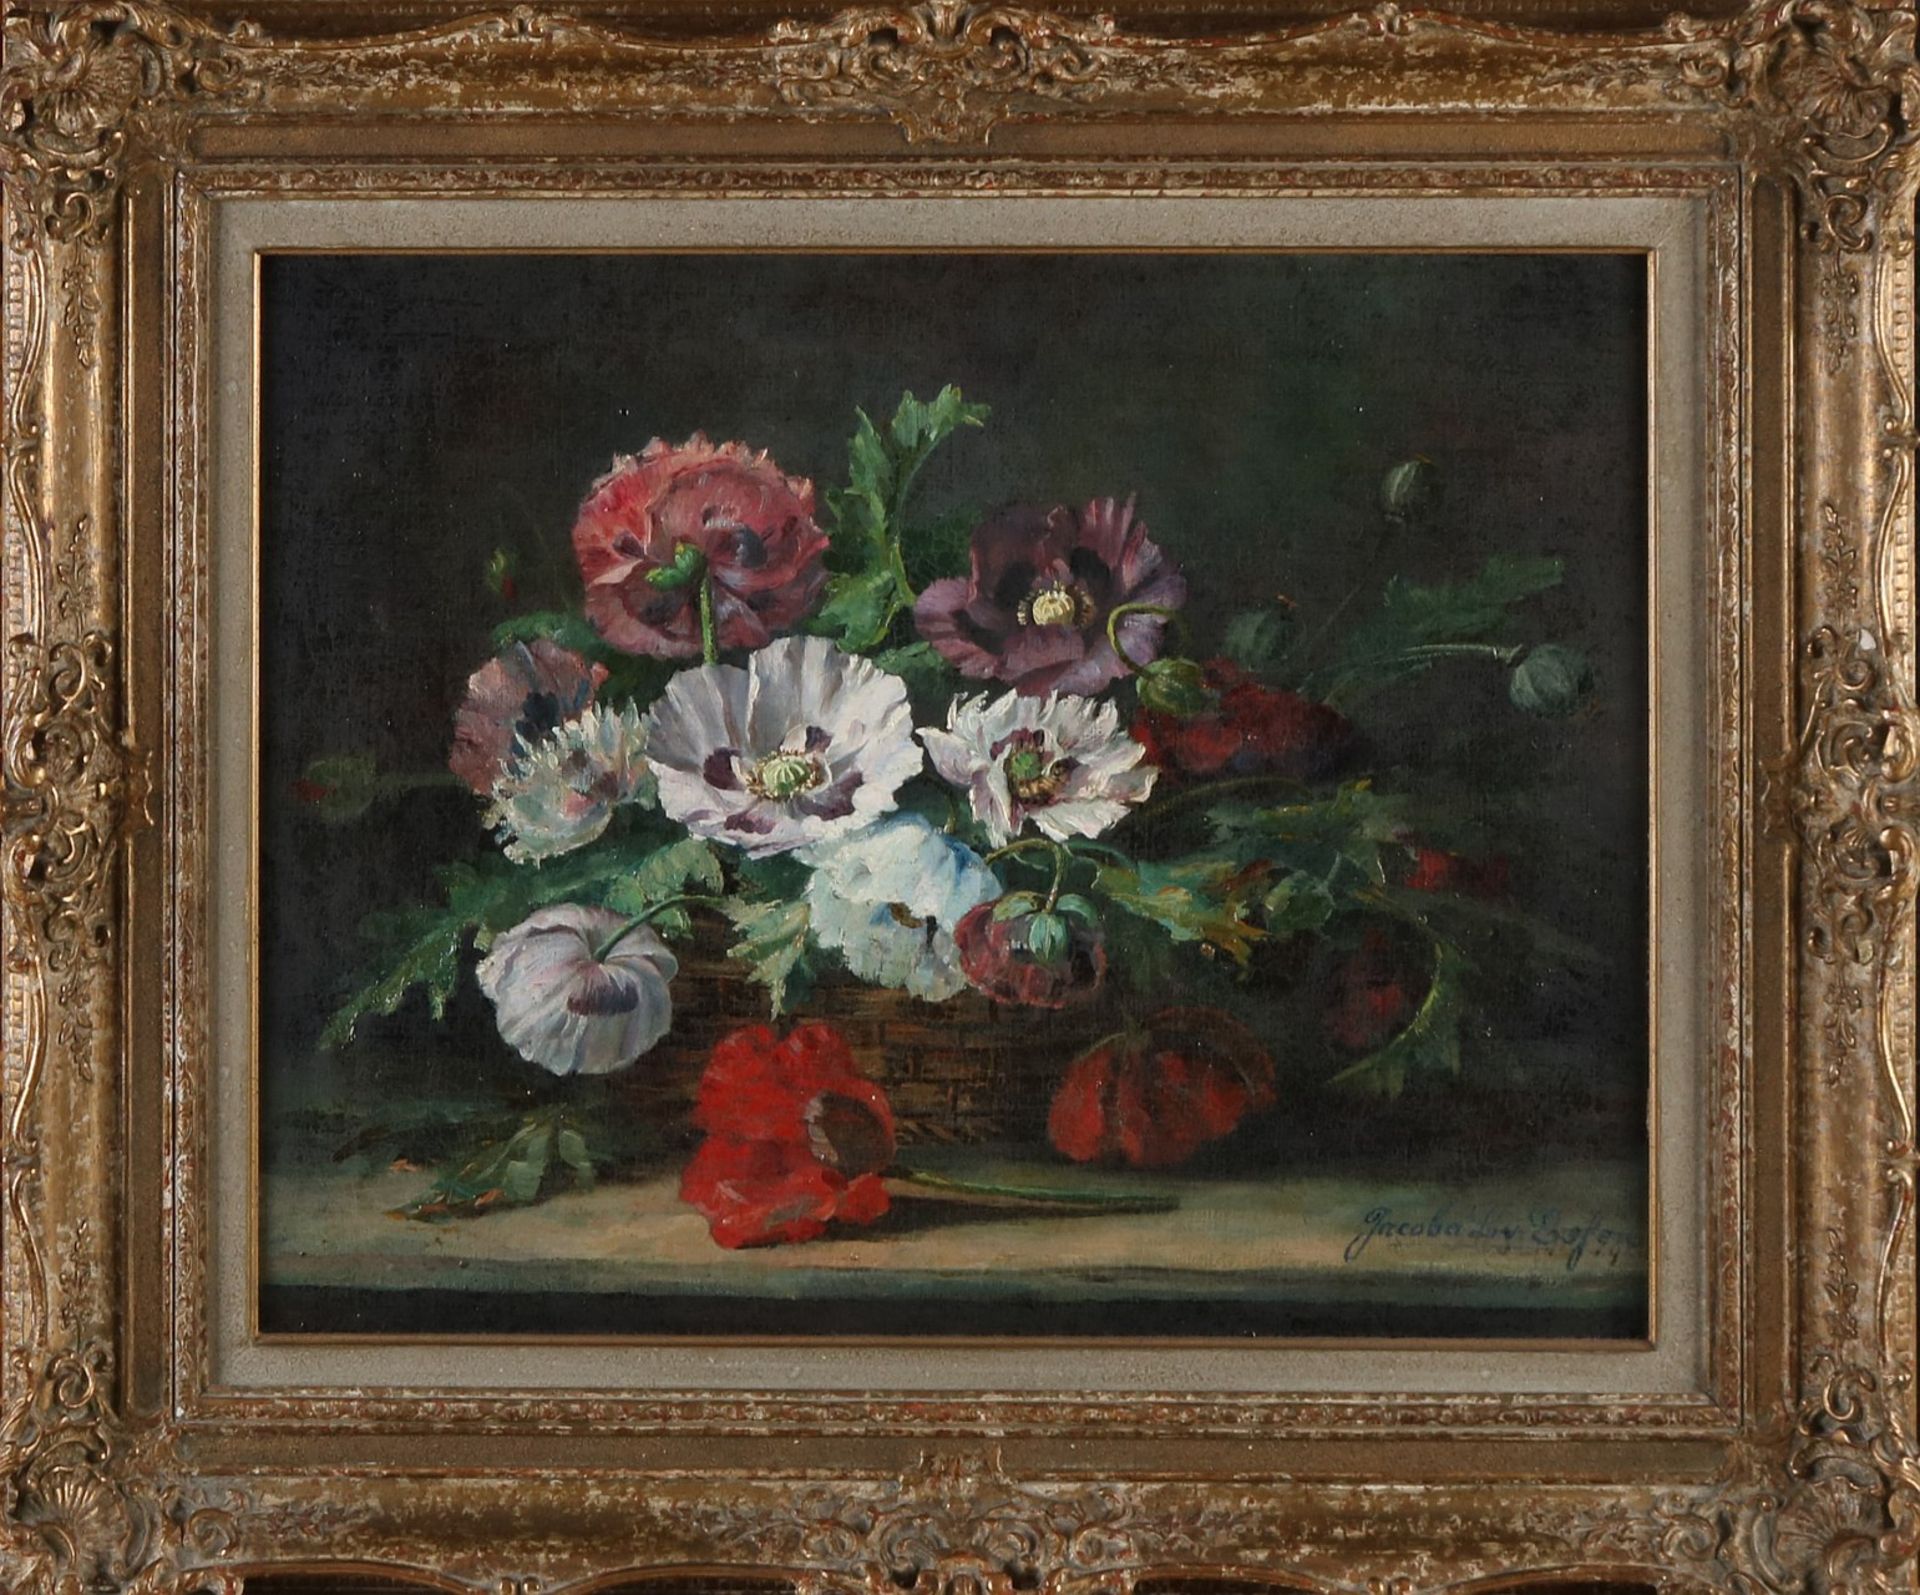 Signiert Jacoba L. v. Eefen. Um 1900. Stillleben, Korb mit Blumen. Öl auf Leinen. Eingebettet.